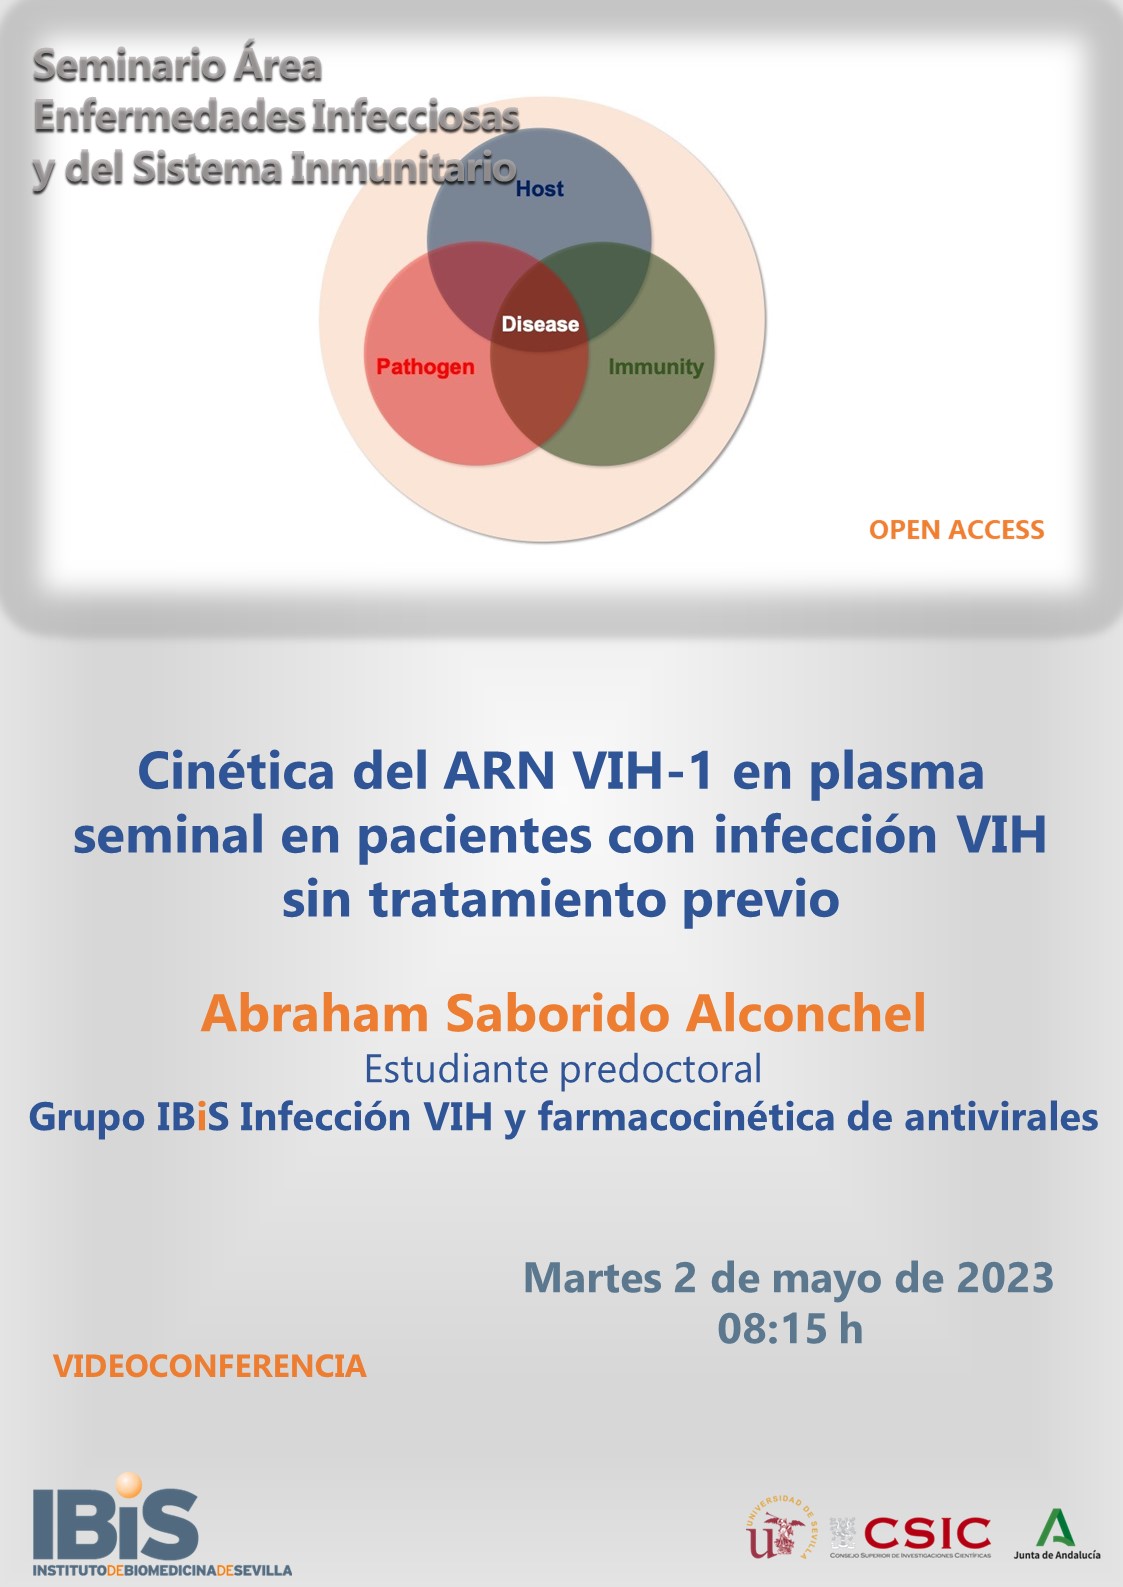 Poster: Cinética del ARN VIH-1 en plasma seminal en pacientes con infección VIH sin tratamiento previo